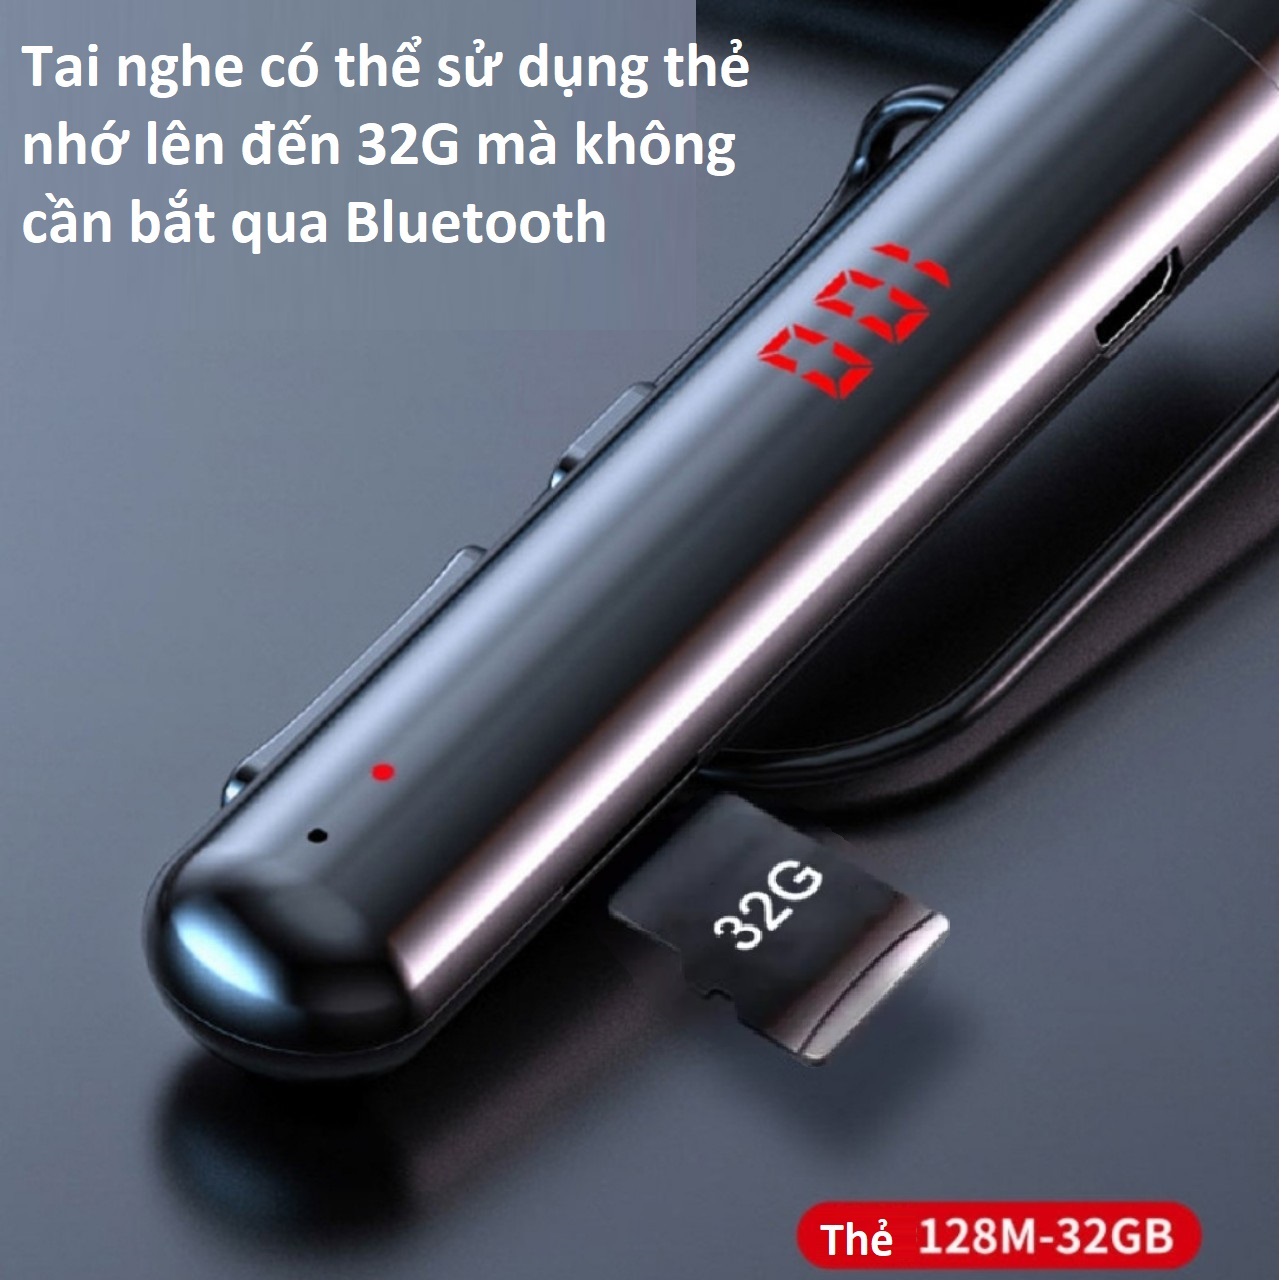 Tai Nghe Bluetooth S960 Mới Âm Thanh Nổi 9D Hifi, Tai Nghe Thể Thao Quàng Cổ, LED Hiển Thị Pin, Hỗ Trợ Khe Lắp Thẻ TF Chơi Nhạc